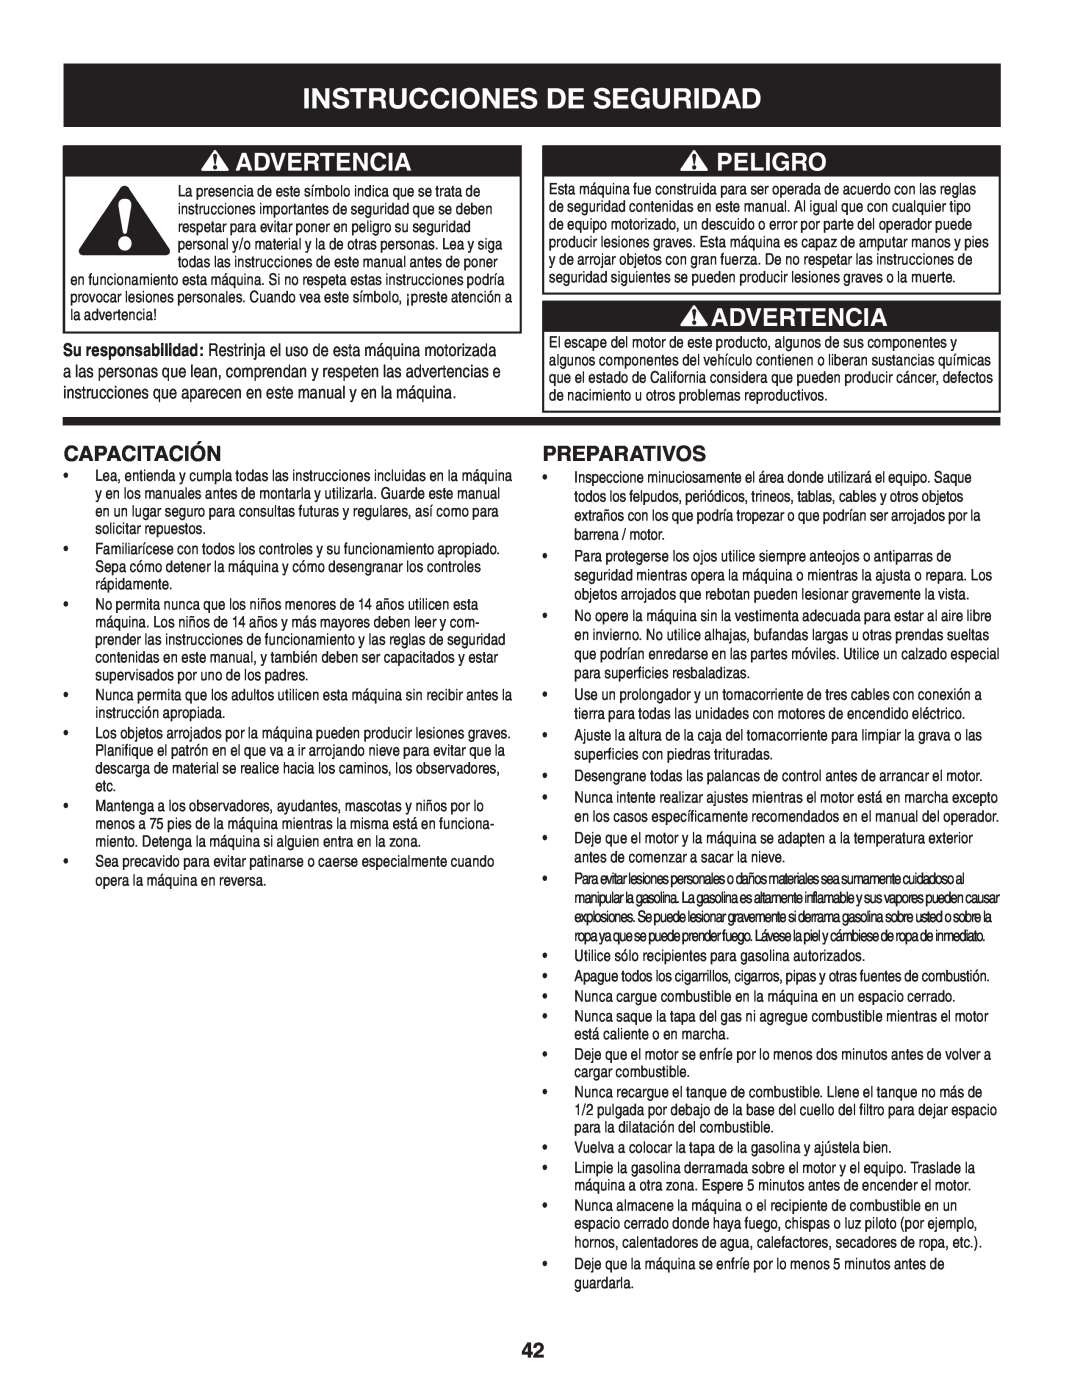 Craftsman 247.8819 operating instructions Instrucciones De Seguridad, Advertencia, Peligro, Capacitación, Preparativos 